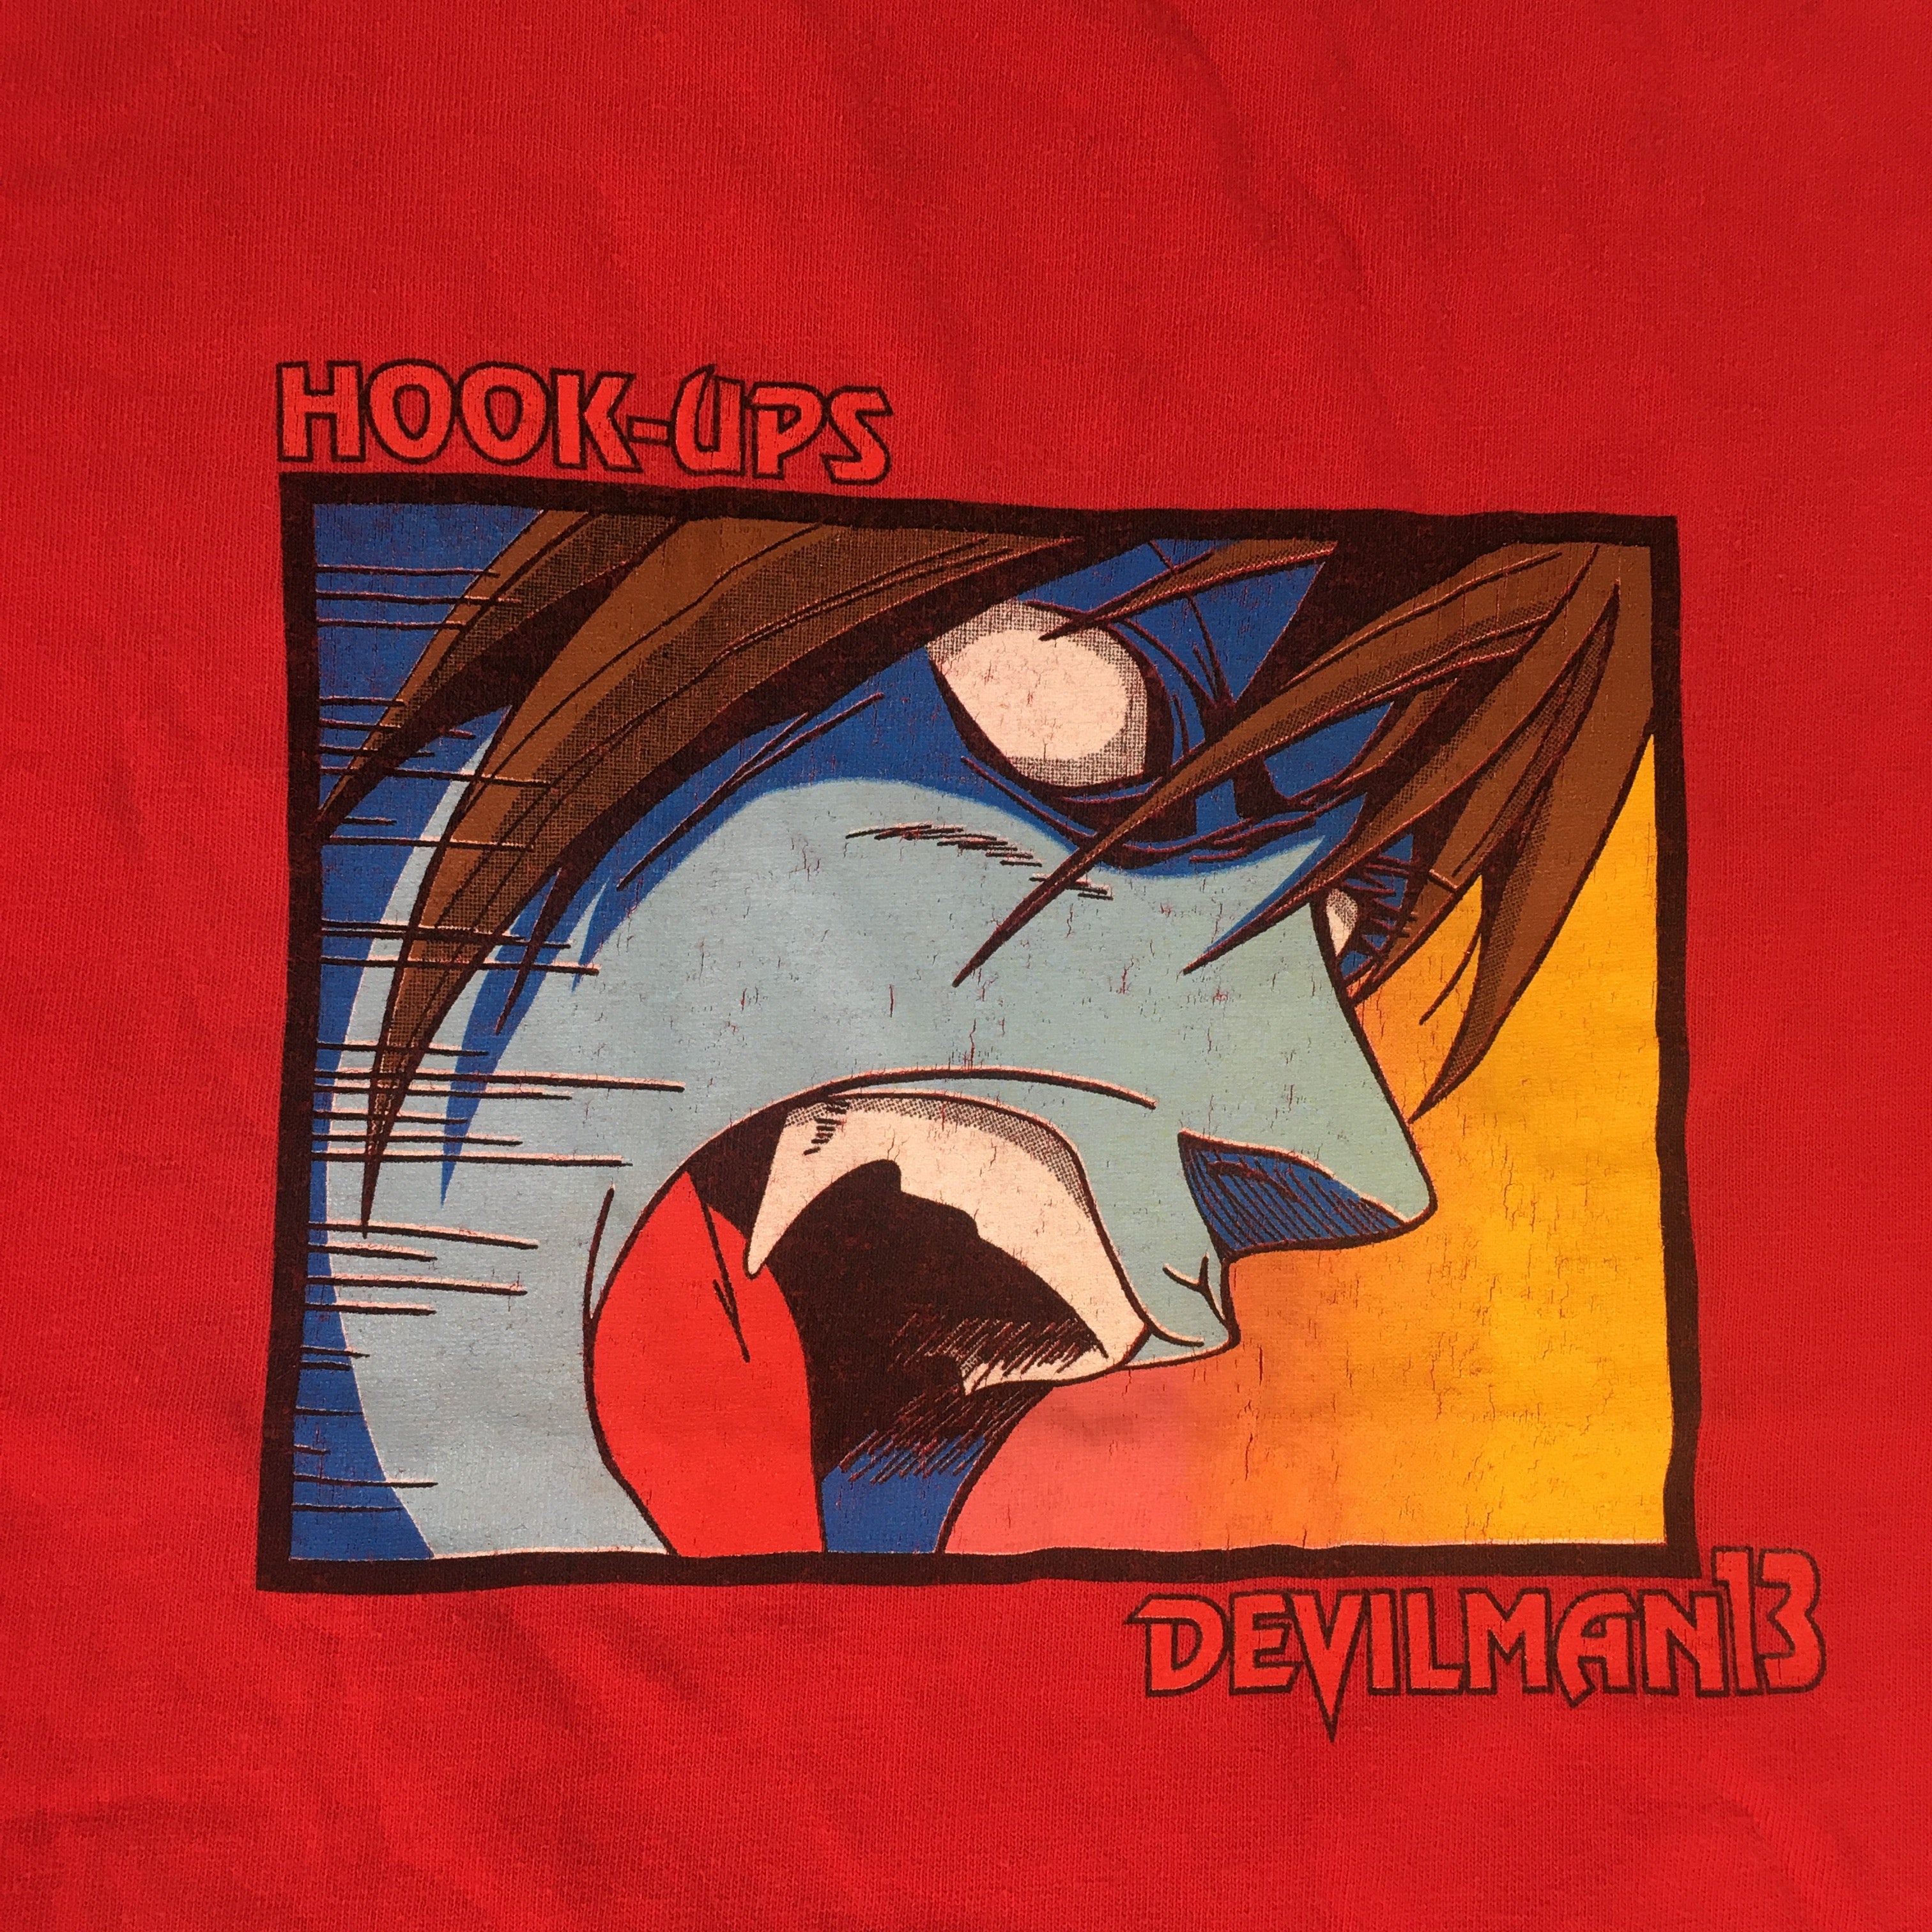 Vintage Hook-Ups Devilman13 T-Shirt